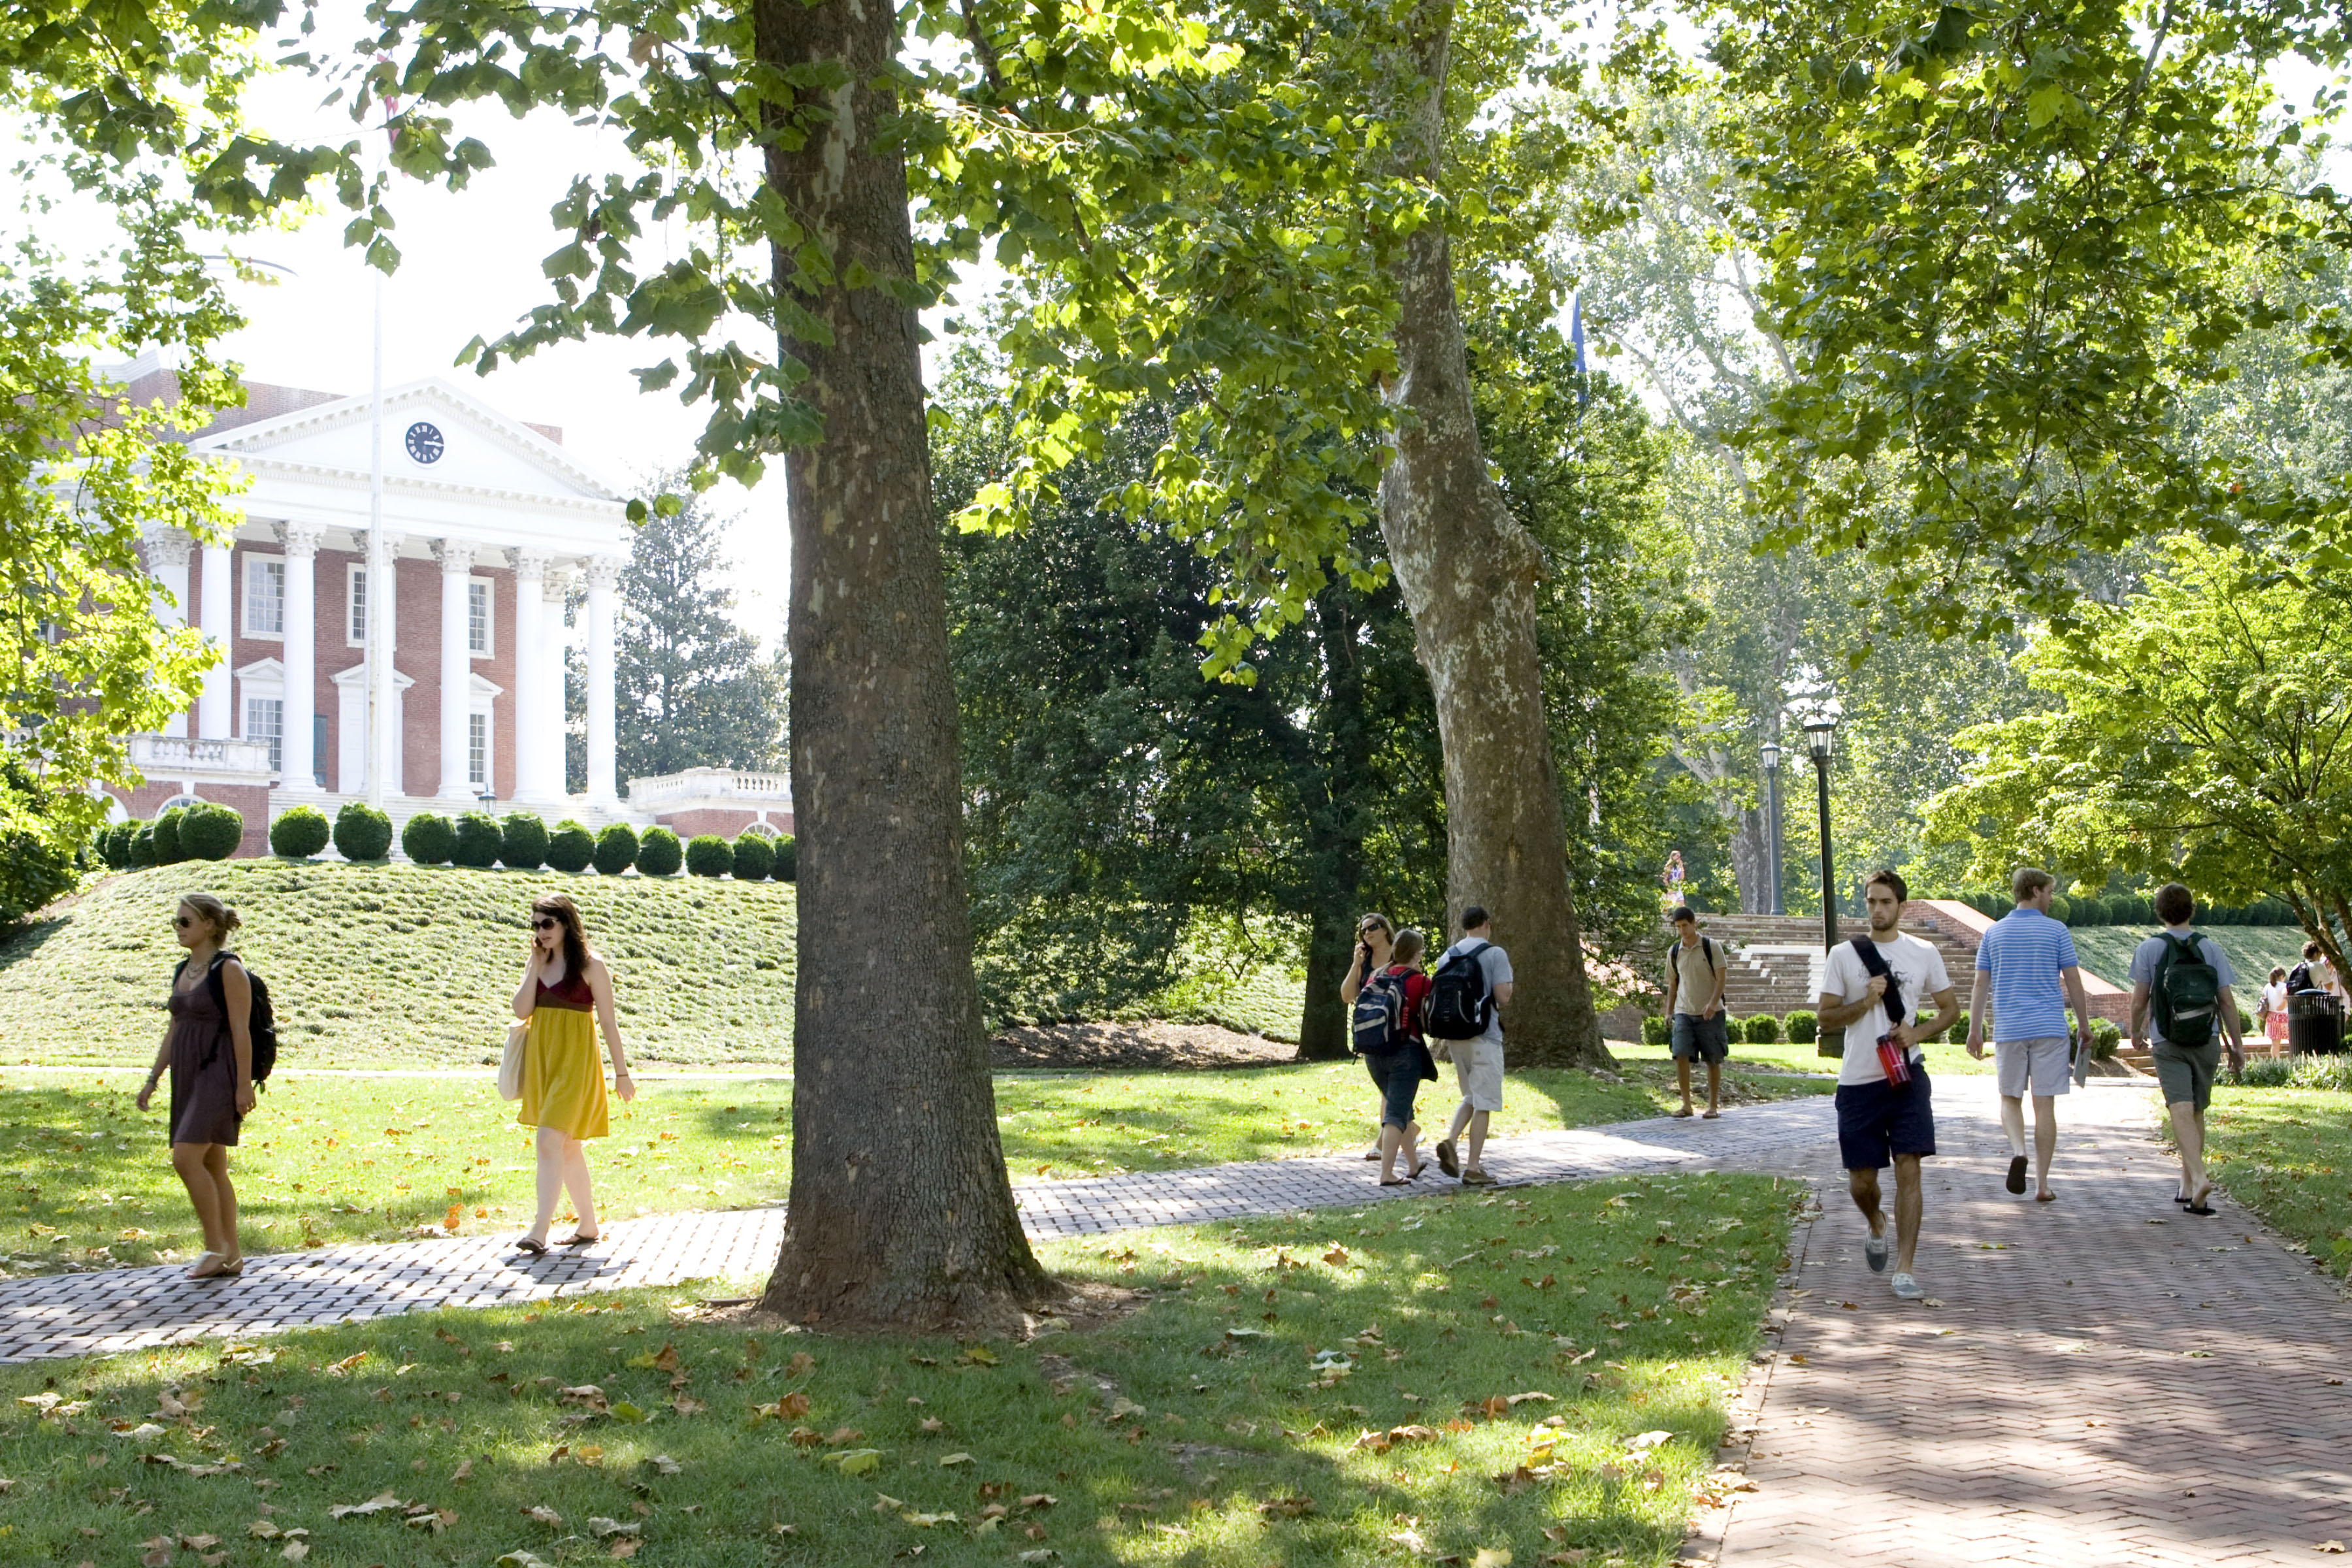 Students walk past U.Va.'s Rotunda on sidewalks